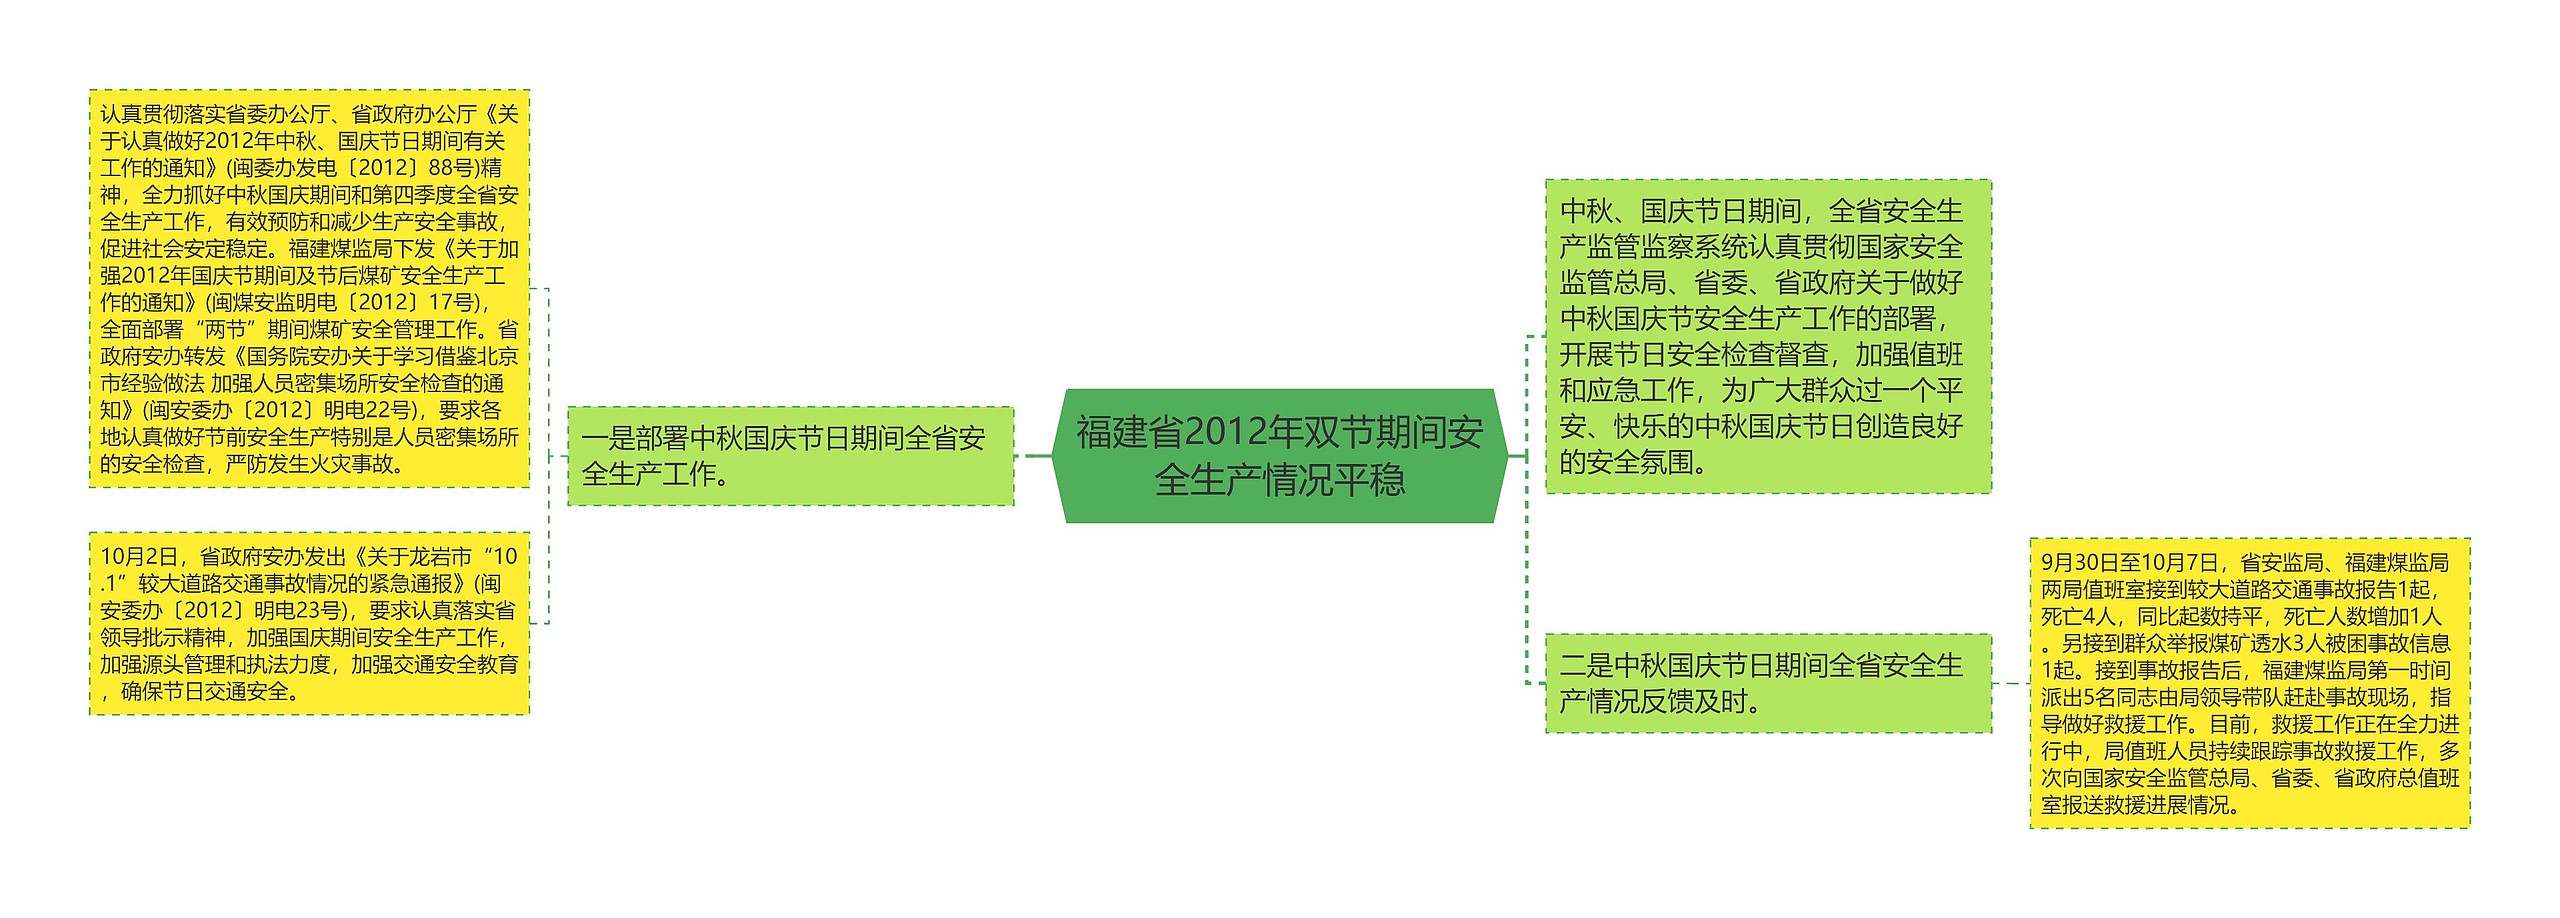 福建省2012年双节期间安全生产情况平稳